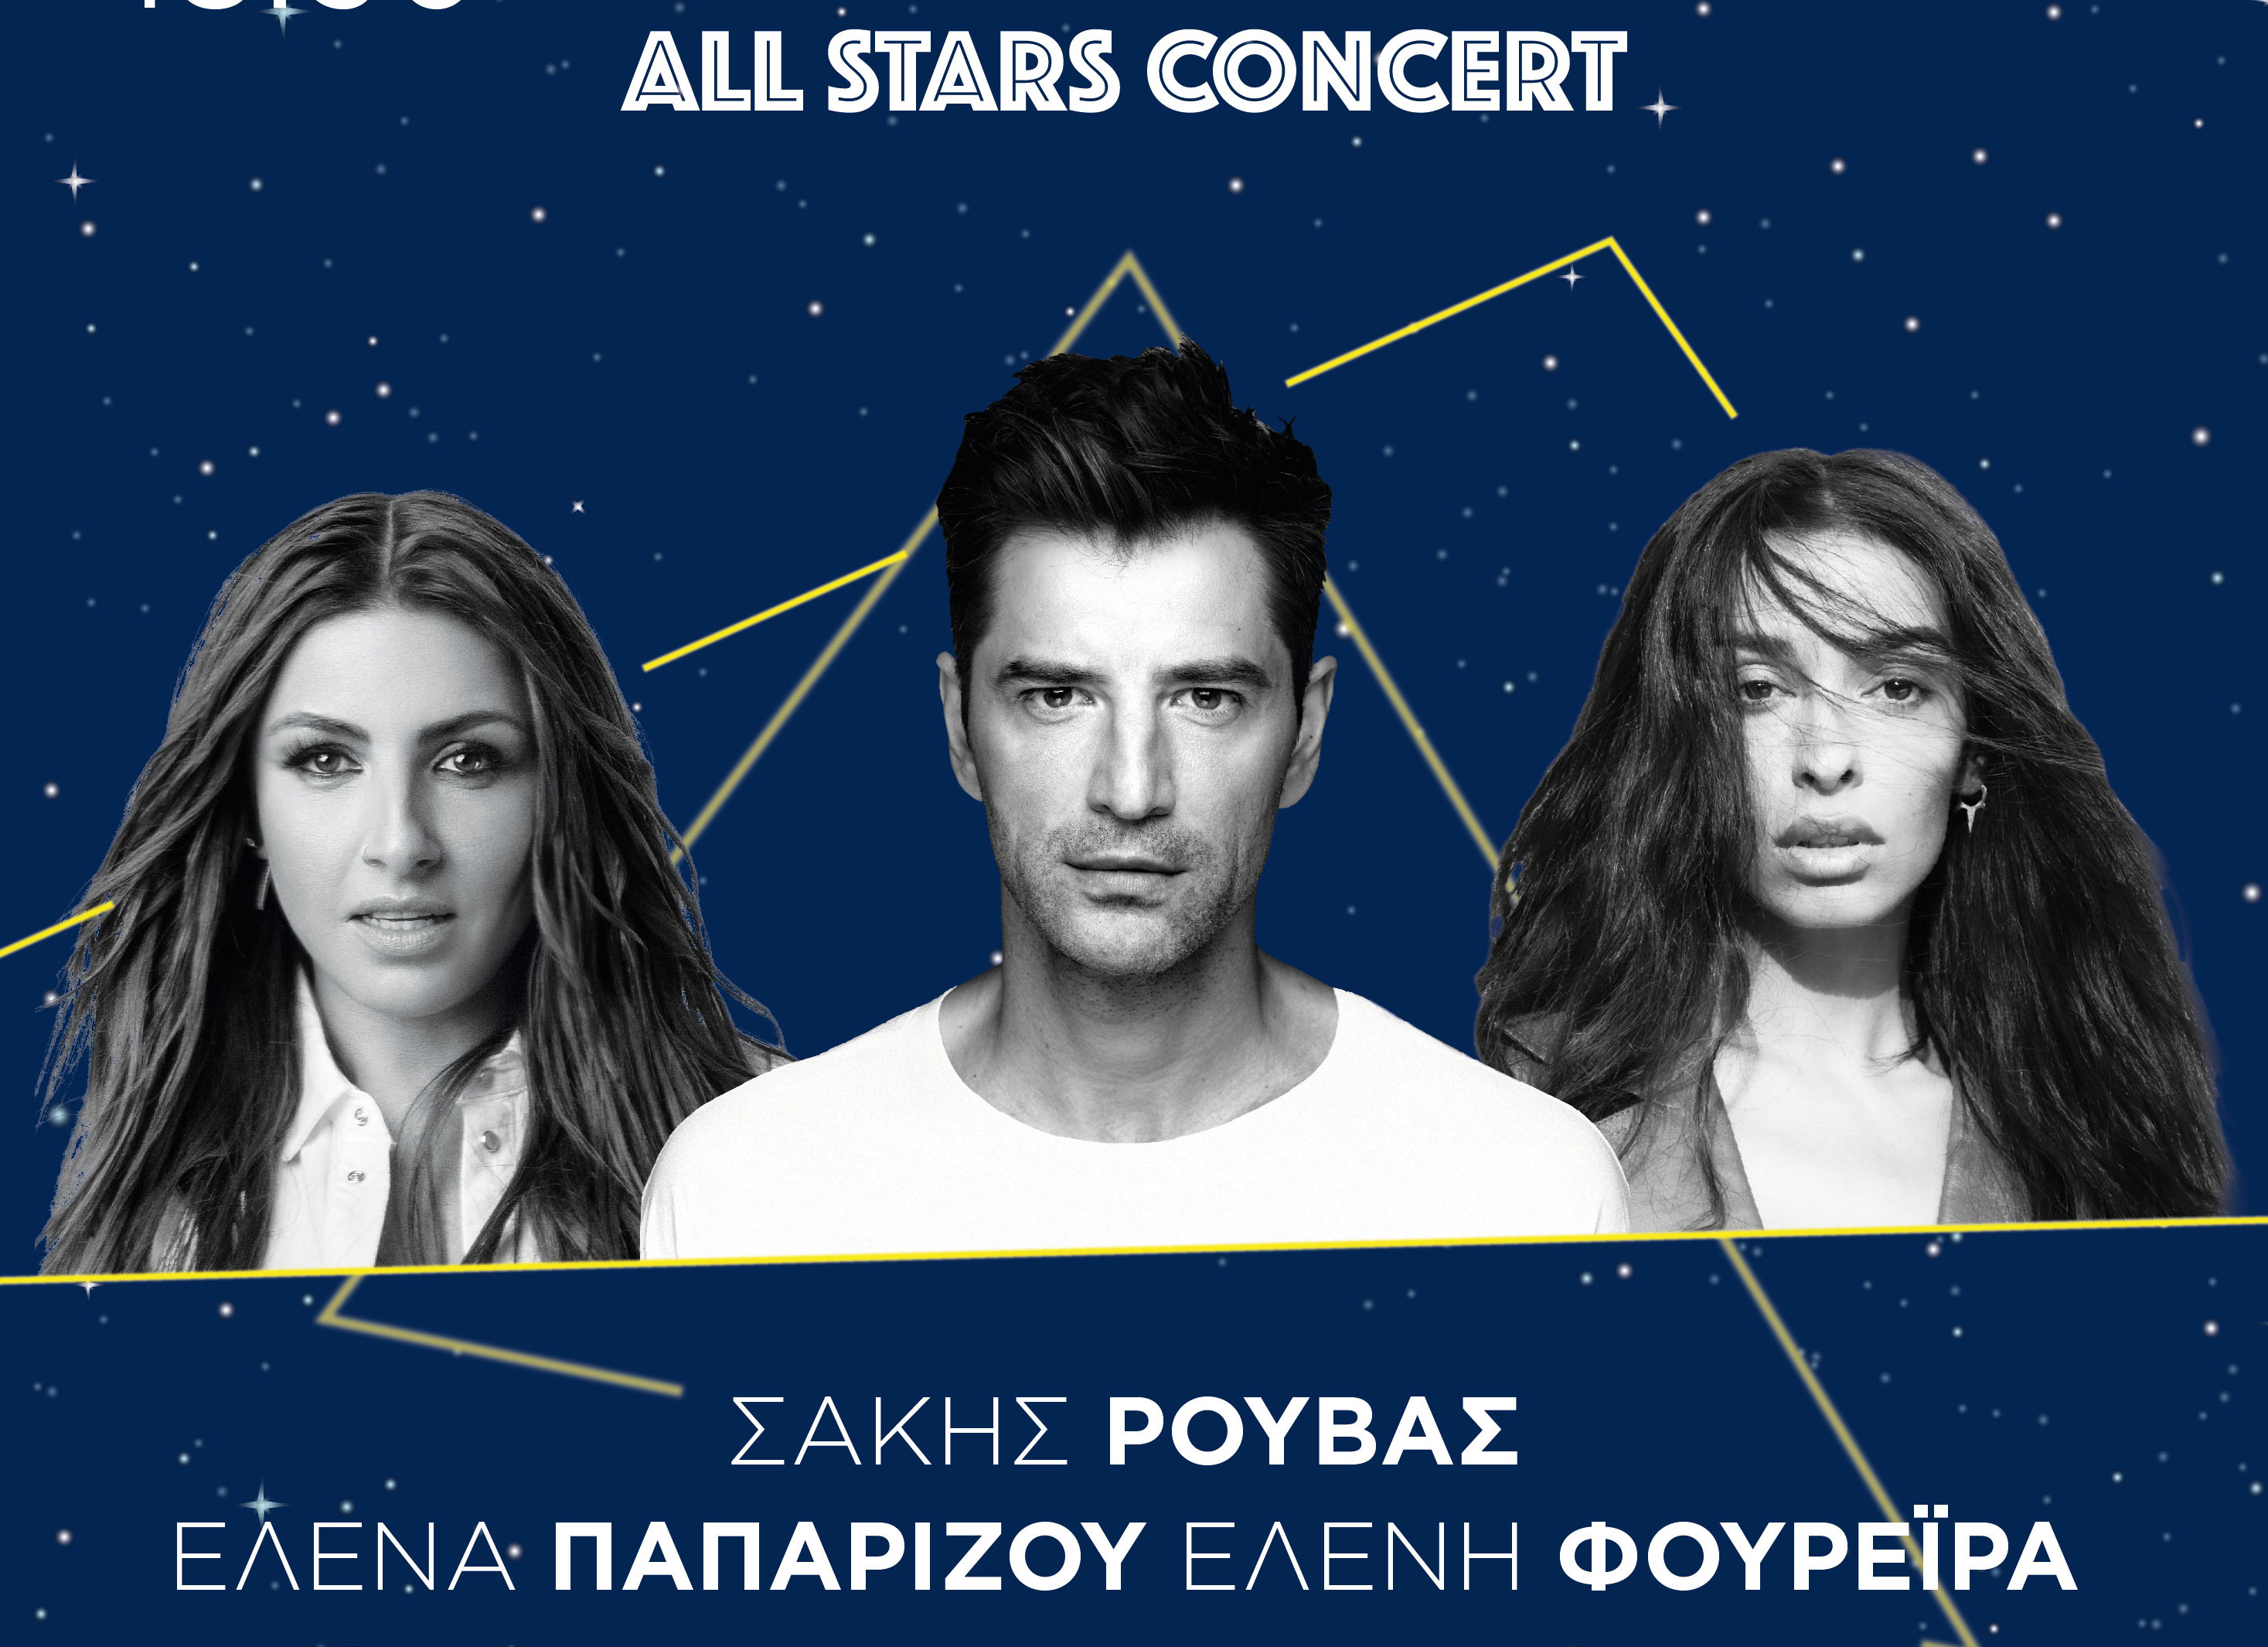 Απόβαση αστέρων στο Markopoulo Park: Σάκης Ρουβάς, Έλενα Παπαρίζου και Ελένη Φουρέιρα σε μια μοναδική συναυλία